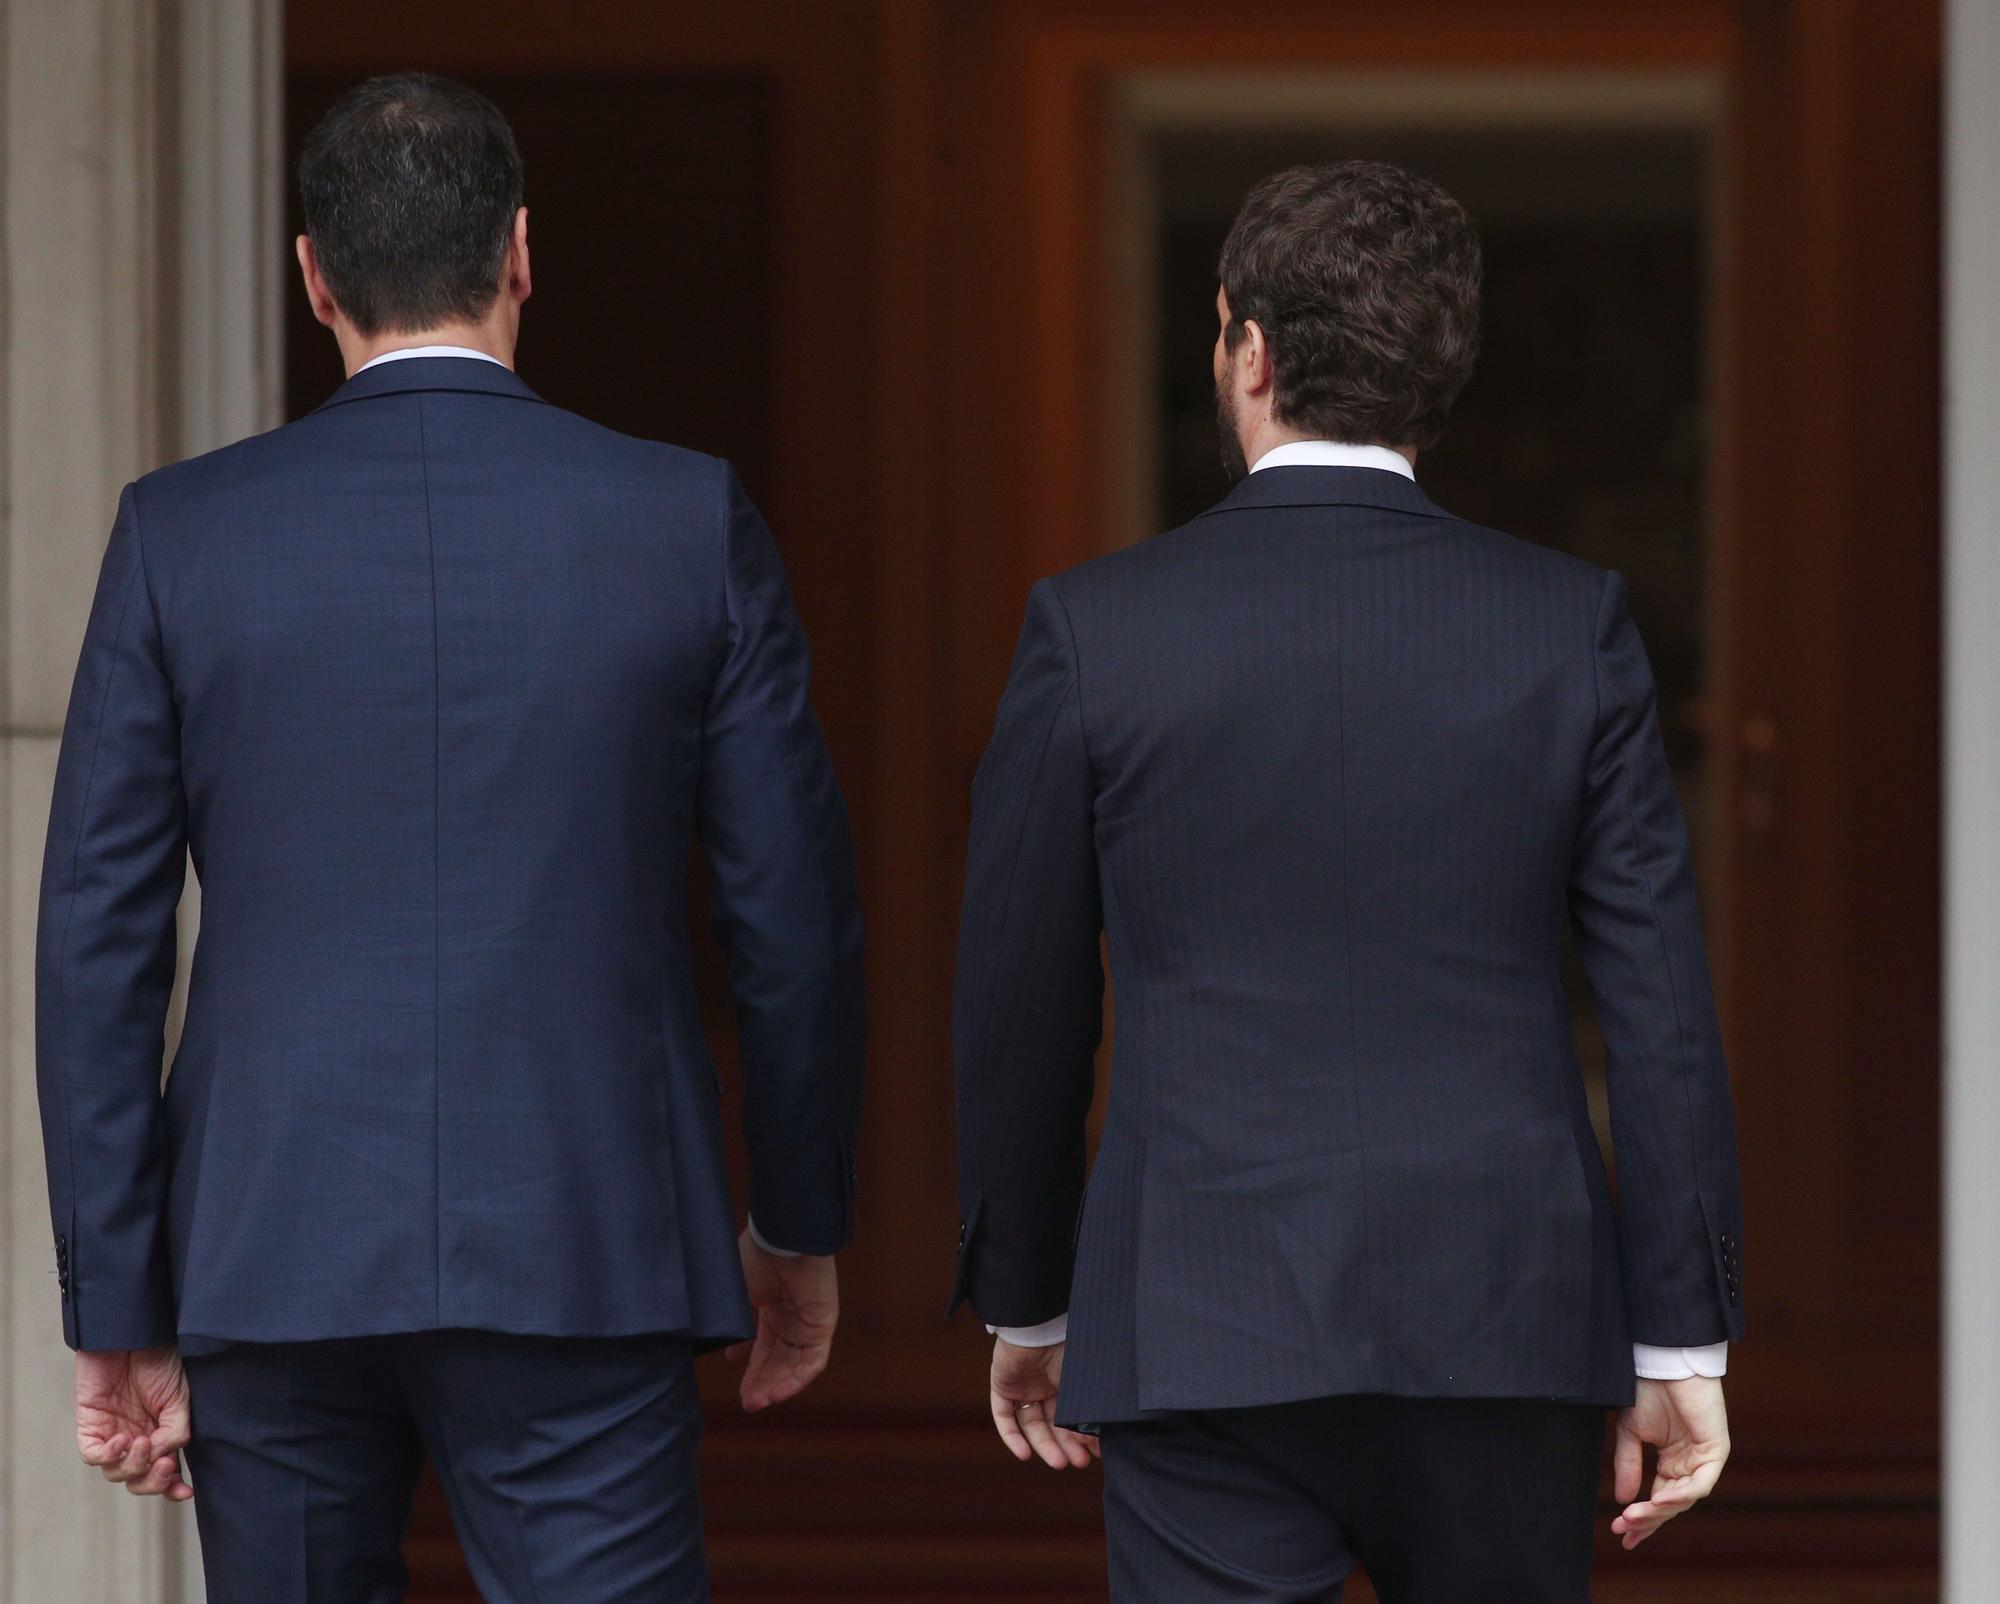 El presidente del Gobierno, Pedro Sánchez, se reúne con el presidente del PP, Pablo Casado en La Moncloa, en una imagen de archivo.